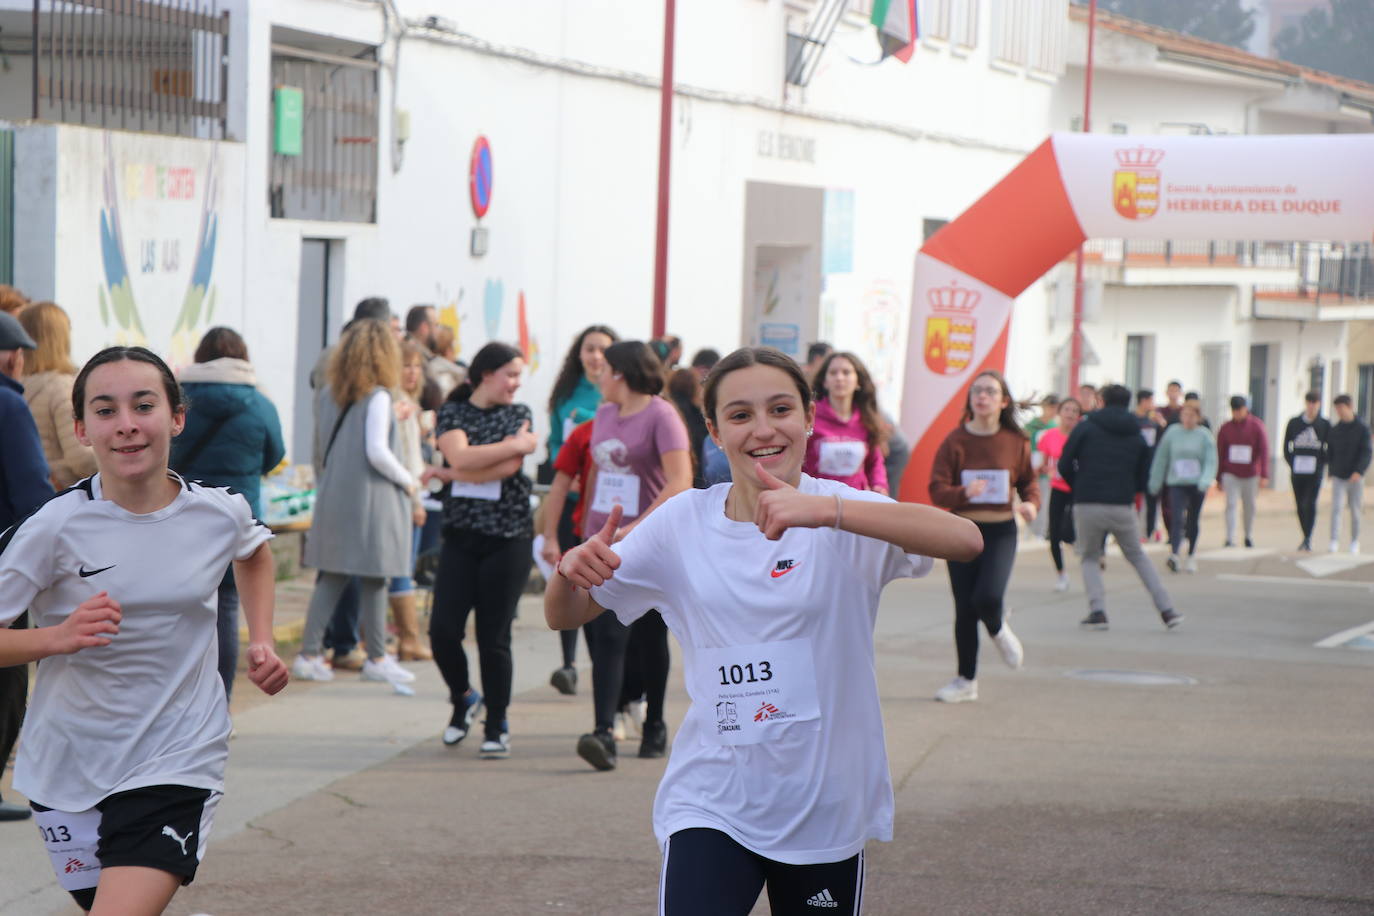 III Carrera Solidaria un evento deportivo que promueve la solidaridad y la paz